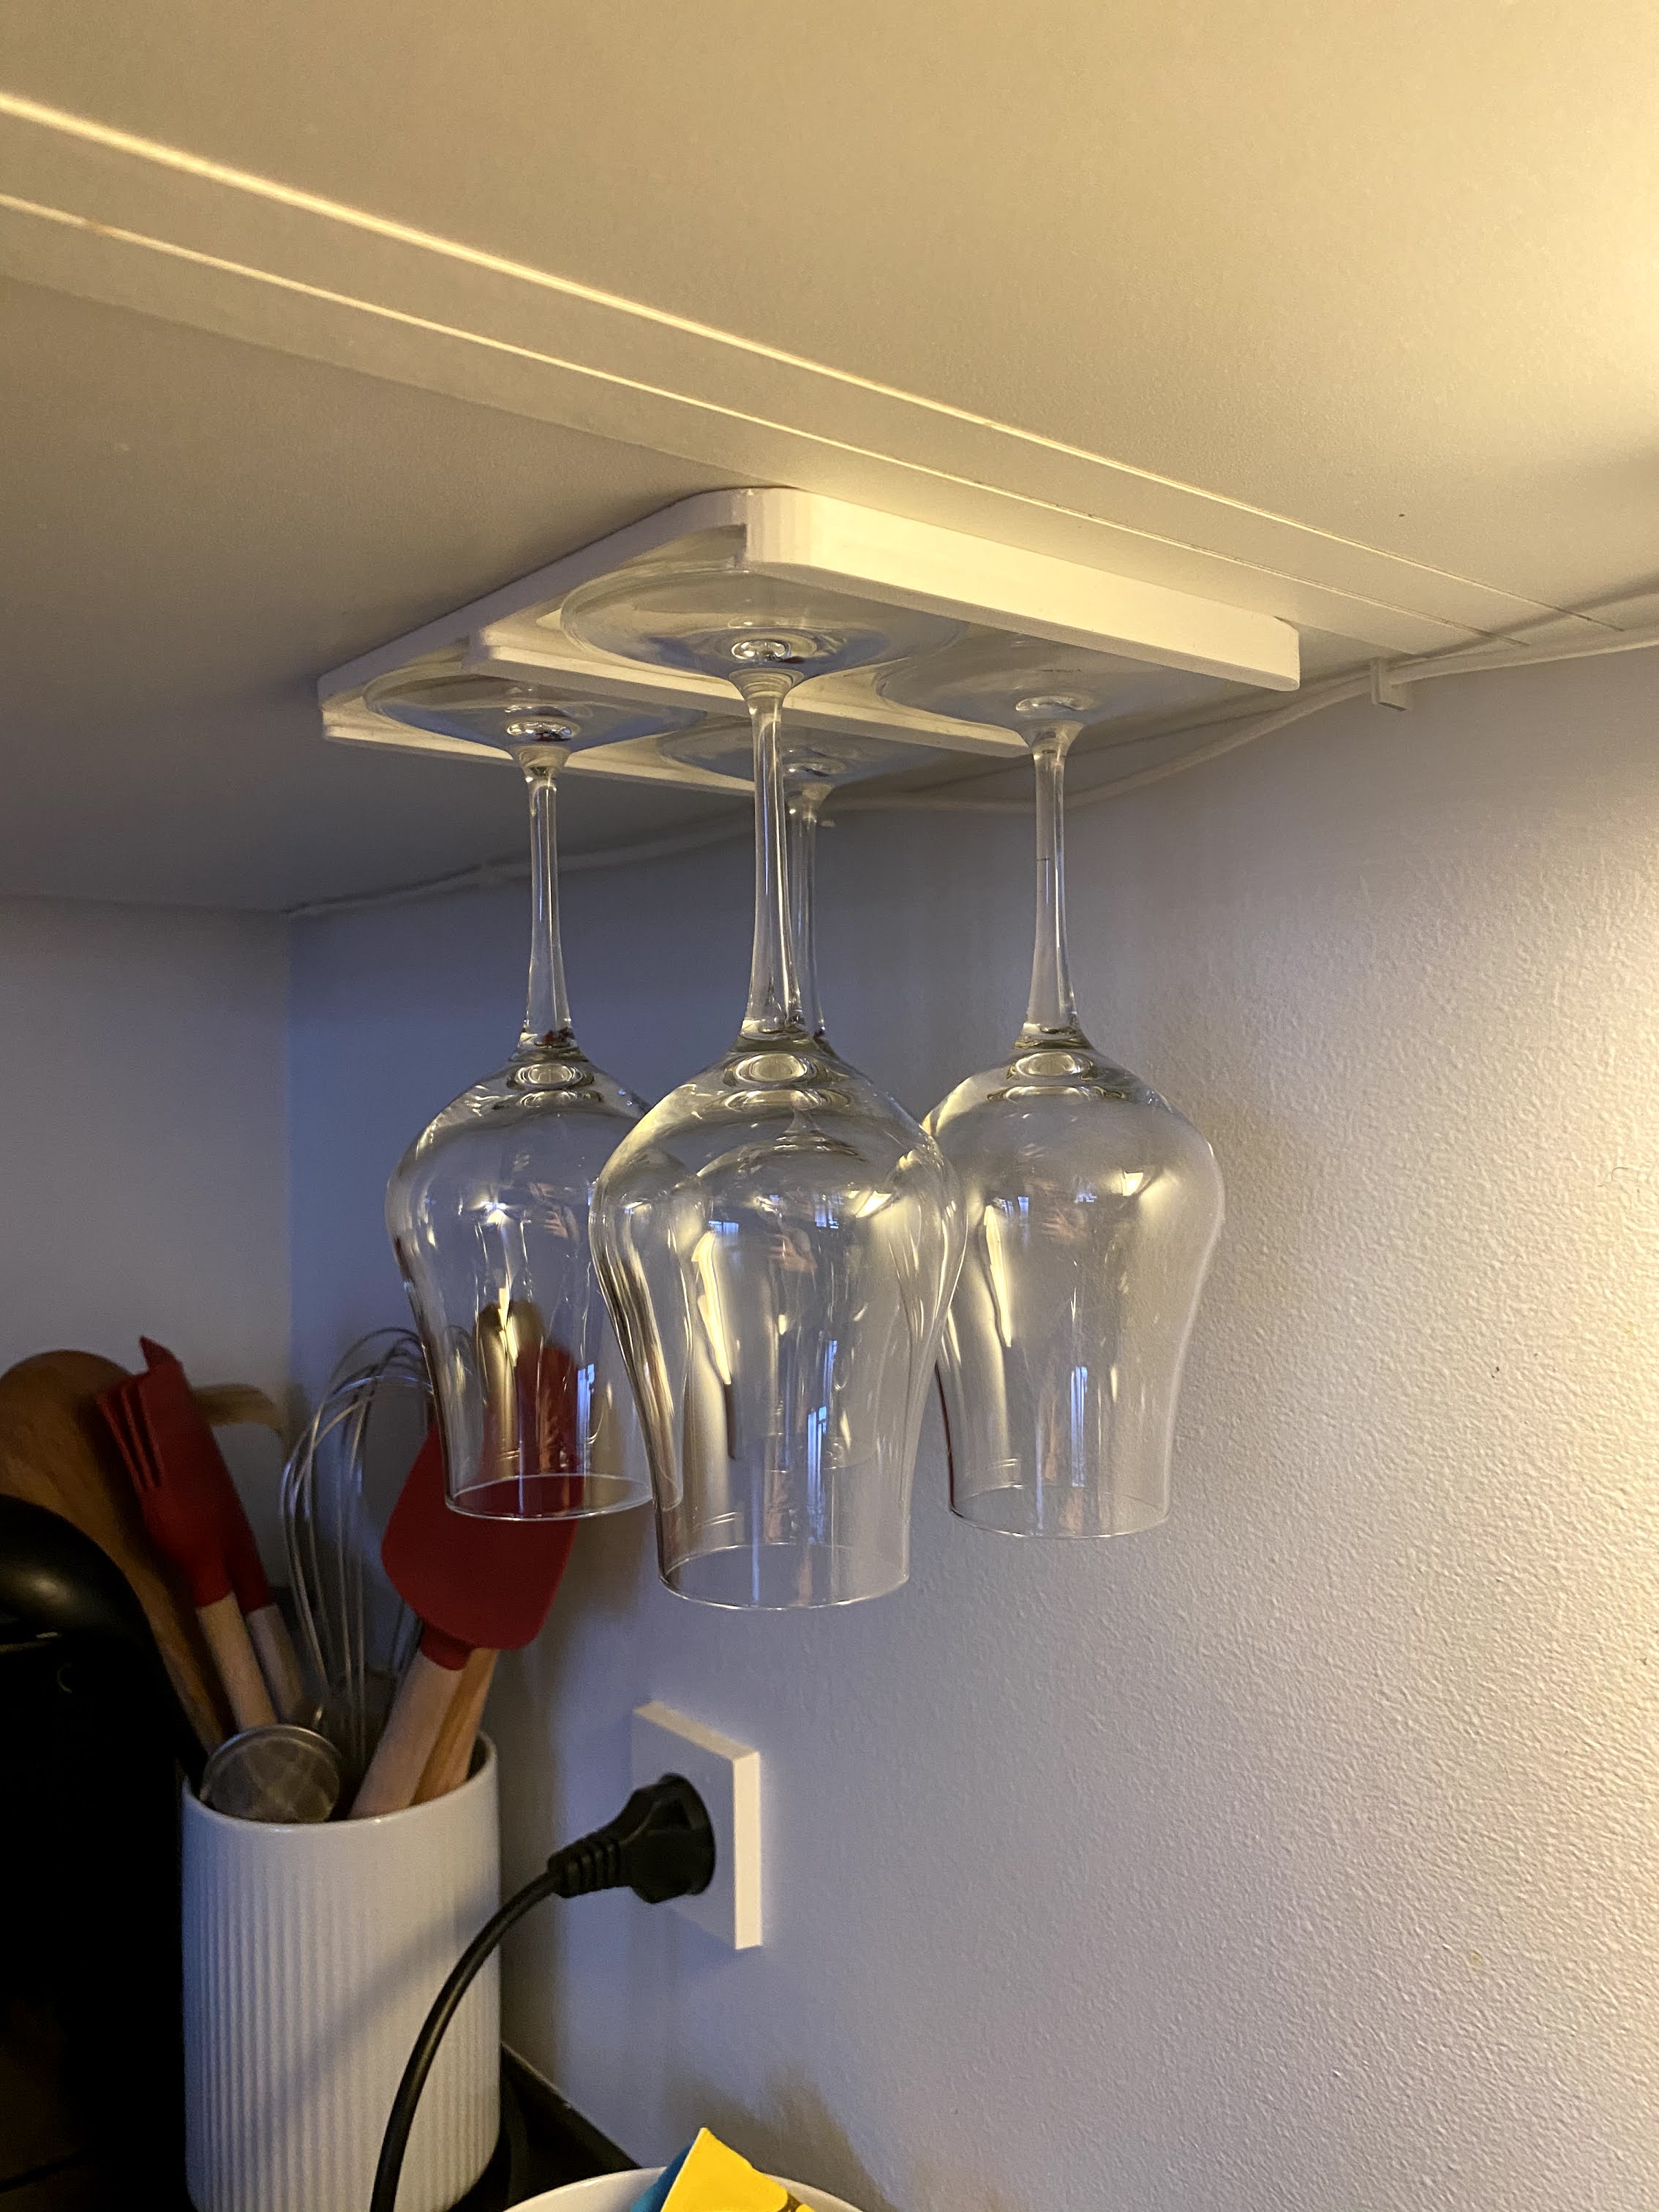 Glassholder for cabinets